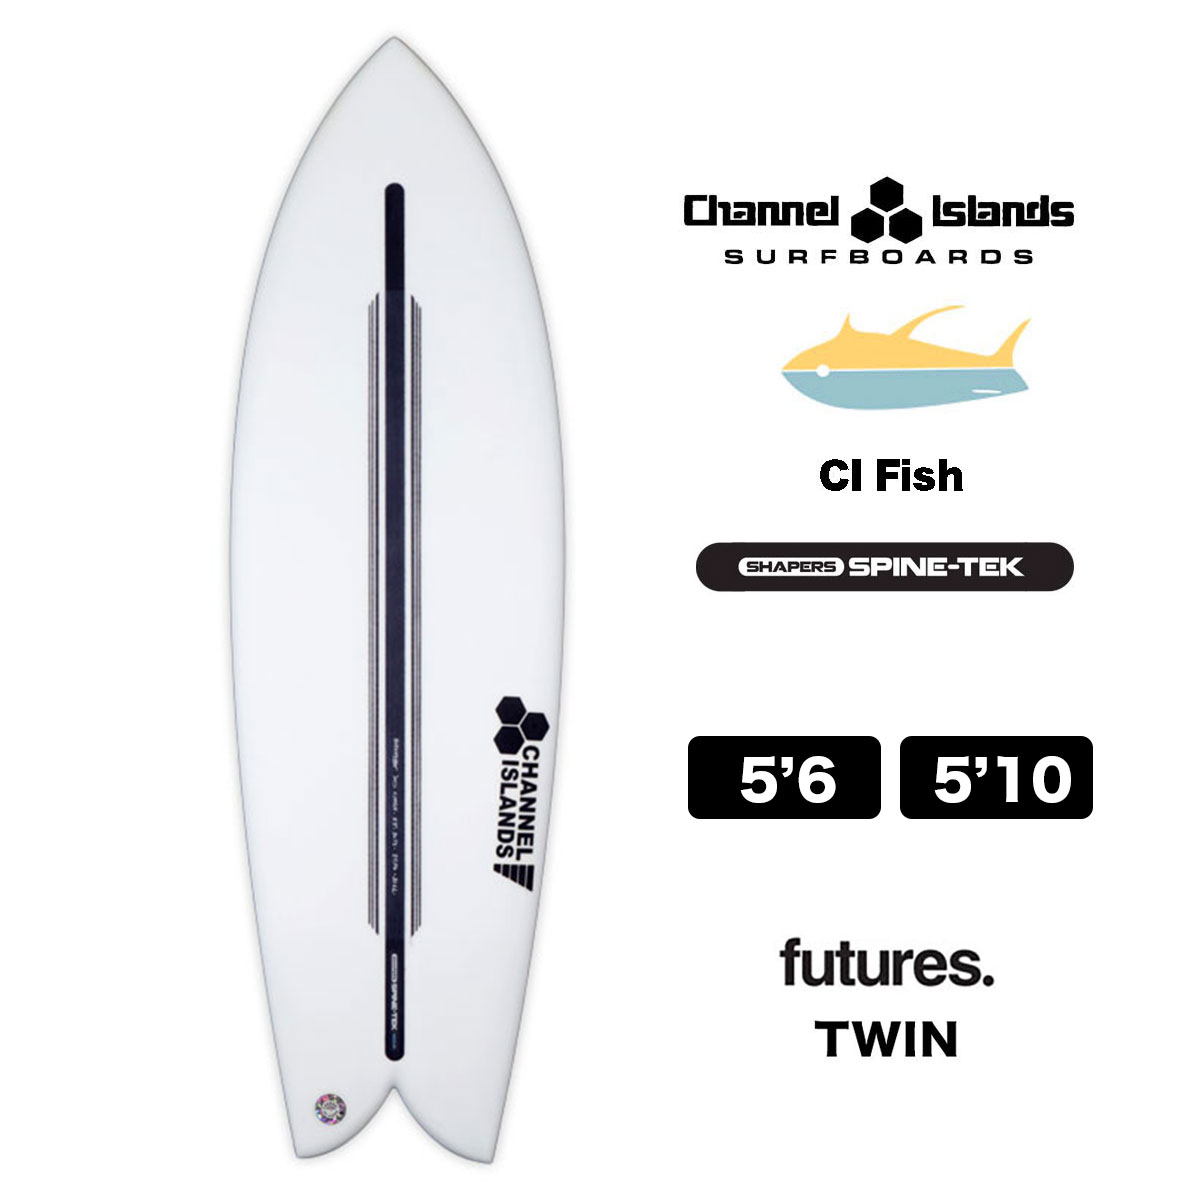 チャンネルアイランド シーアイフィッシュ Channel Islands CI FISH SPINE-TEK 5.6 / 5.10 スパインテック  5'6 / 5'10 サーフボード サーフィン futures ツインTWIN-ジャックオーシャンスポーツ